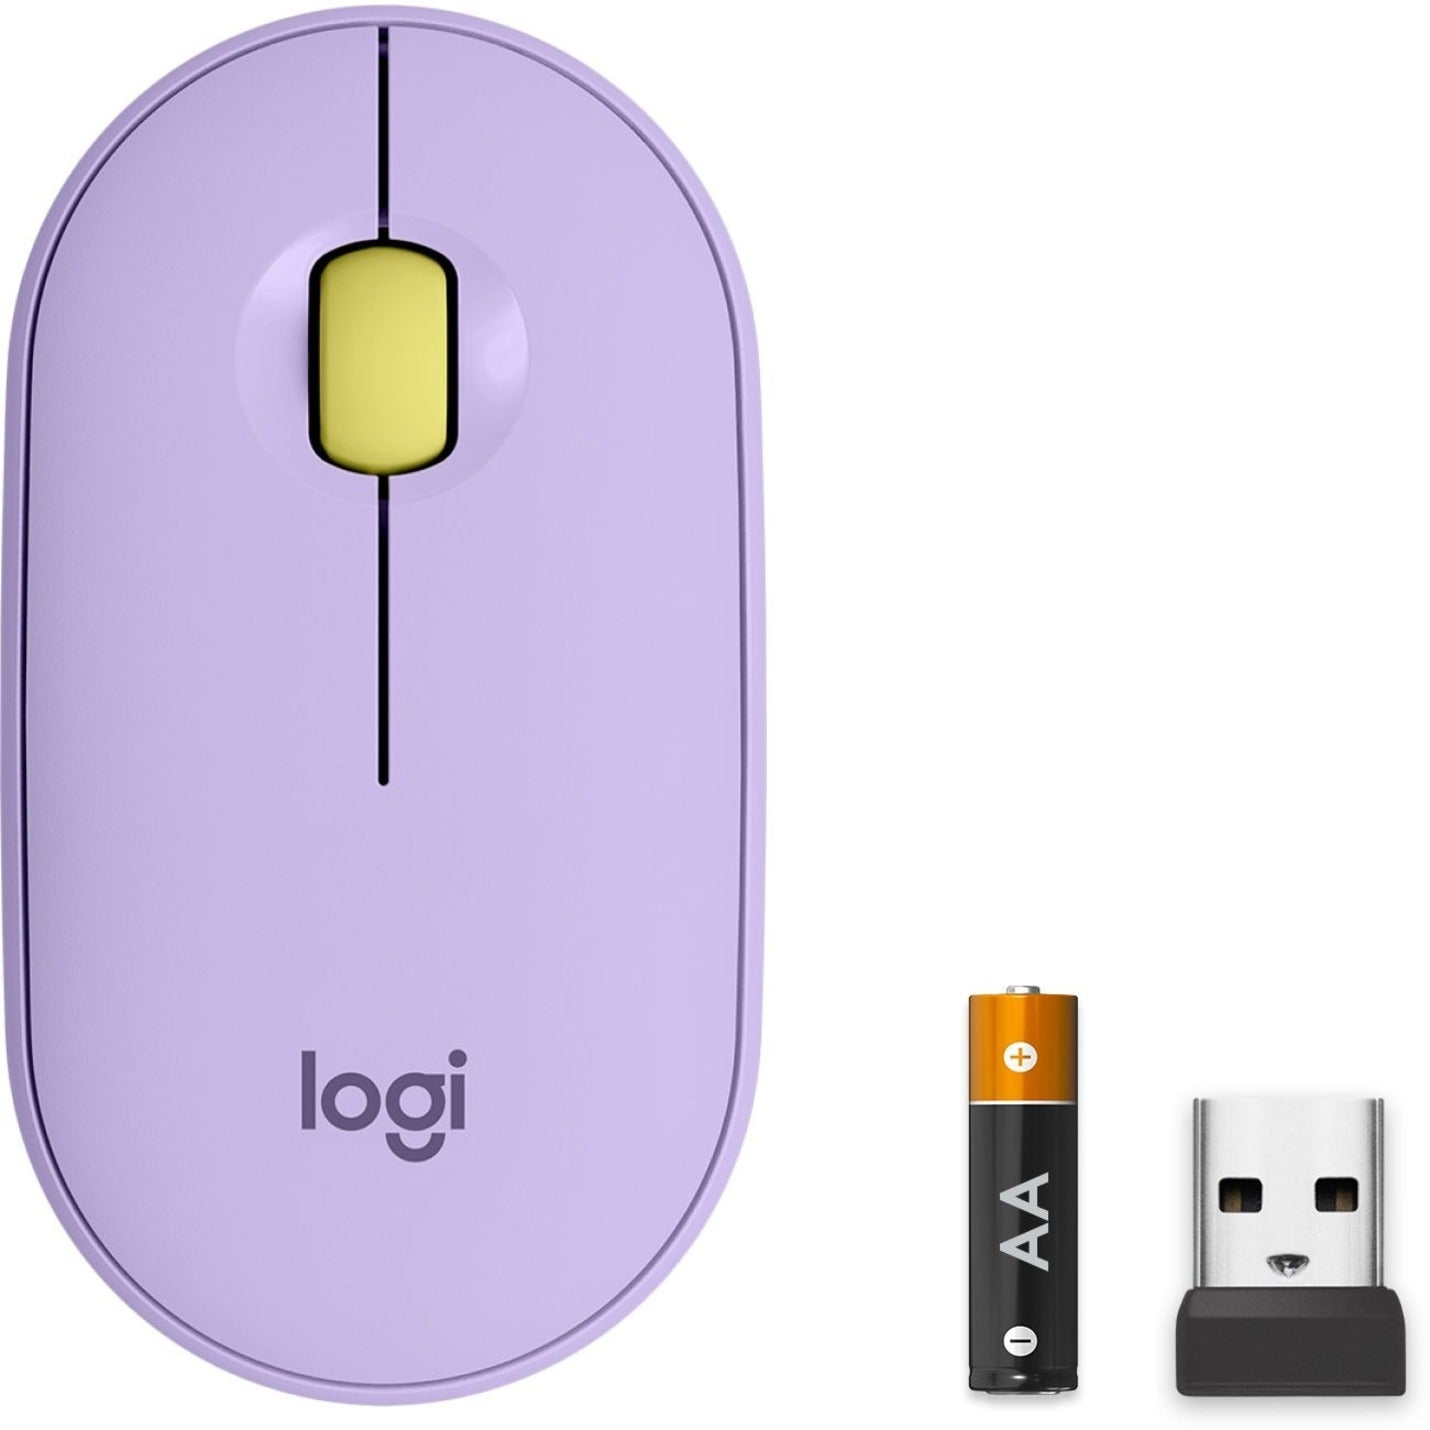 Logitech 910-006659 Pebble M350 Wireless Mouse, Lavender Lemonade, 1000 dpi, 2.4 GHz [Discontinued]